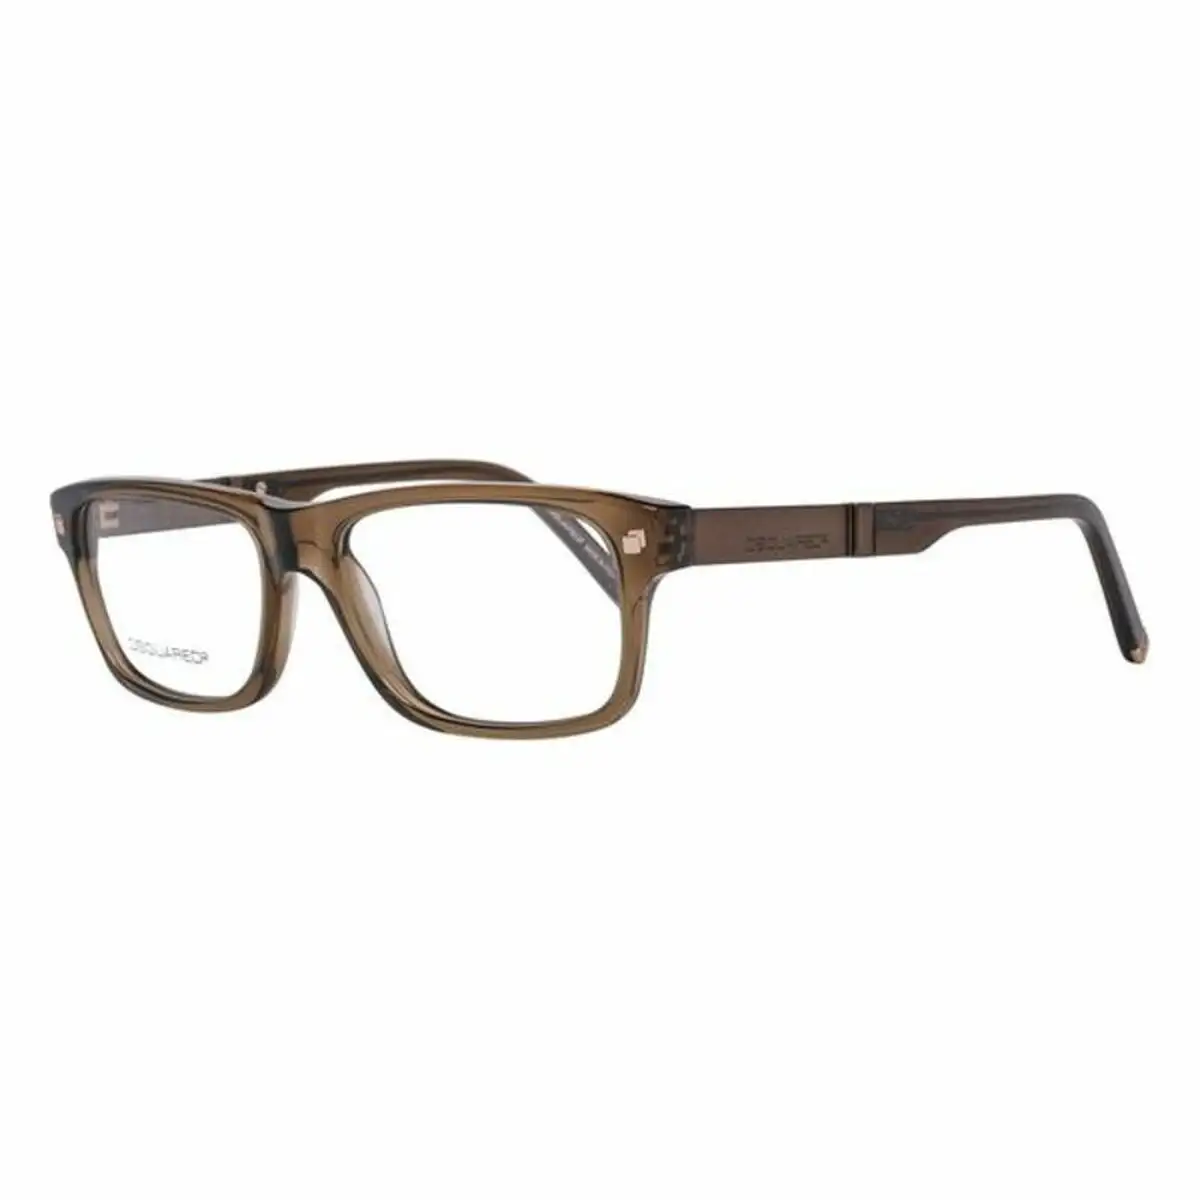 Monture de lunettes homme dsquared2 dq5103 093 52 marron o 52 mm o 52 mm _5677. DIAYTAR SENEGAL - Où Choisir Devient un Acte de Découverte. Découvrez notre gamme et choisissez des produits qui éveillent votre curiosité et élargissent vos horizons.